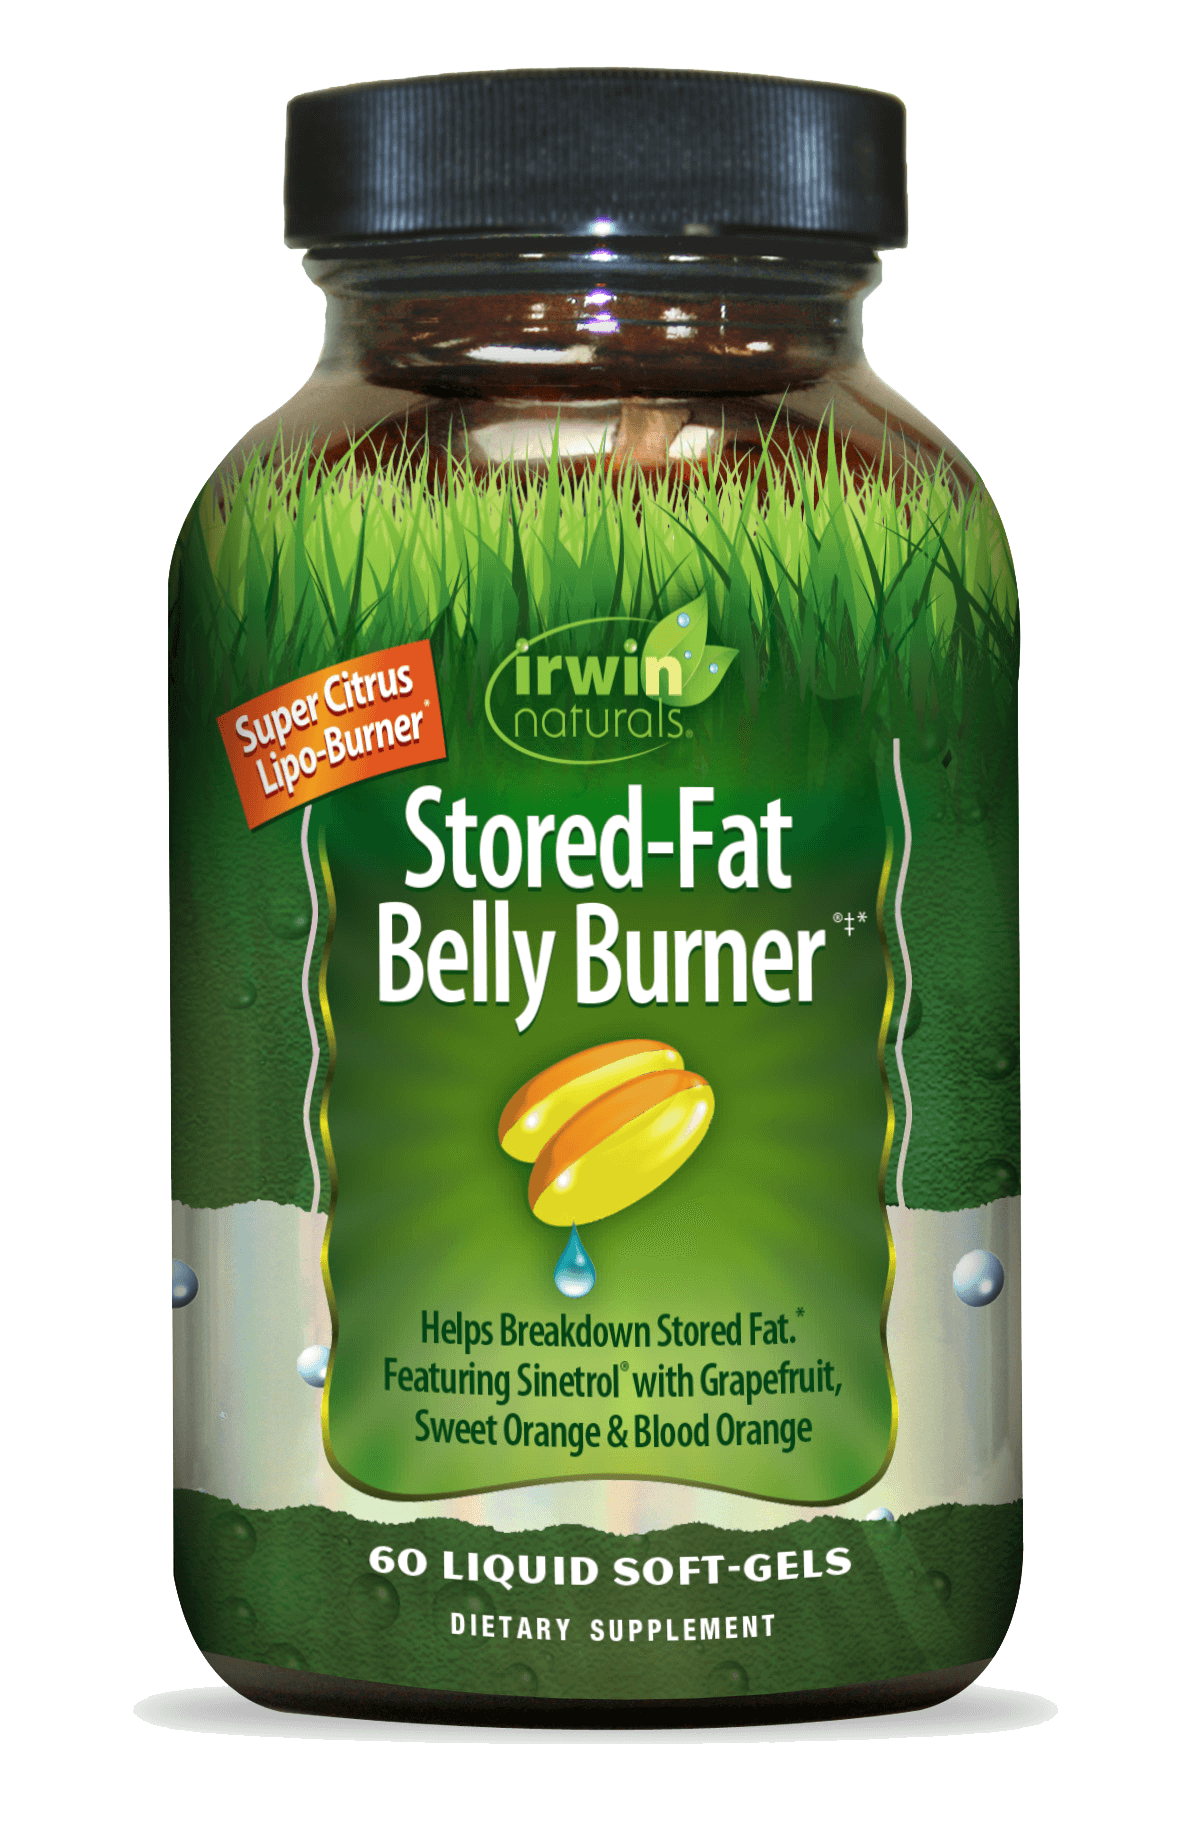 Belly fat burner supplements